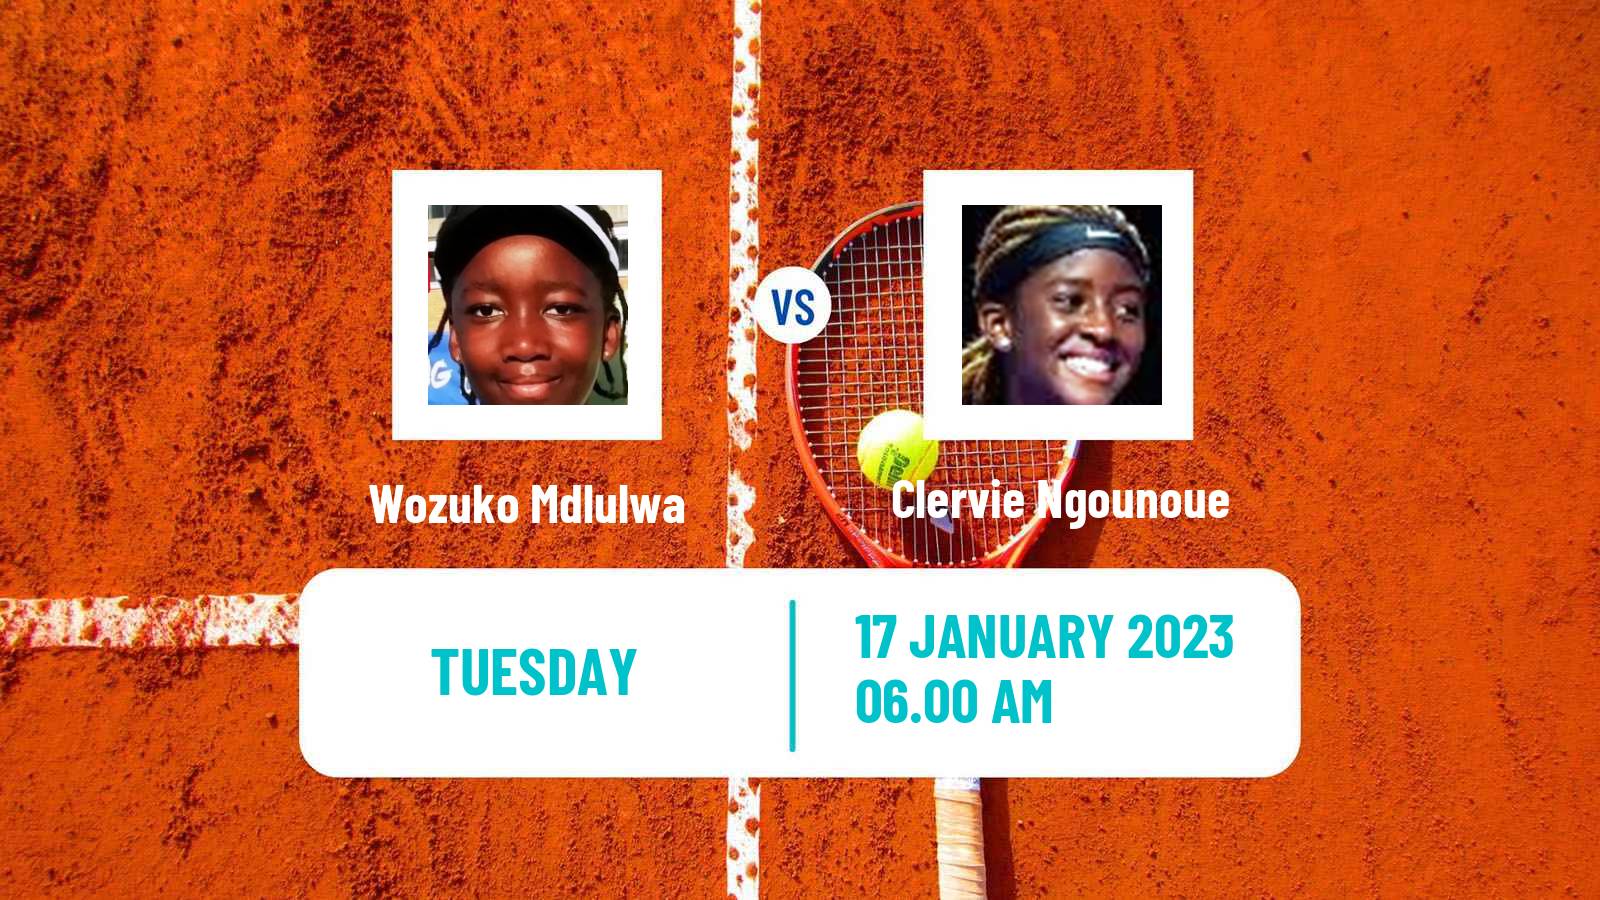 Tennis ITF Tournaments Wozuko Mdlulwa - Clervie Ngounoue